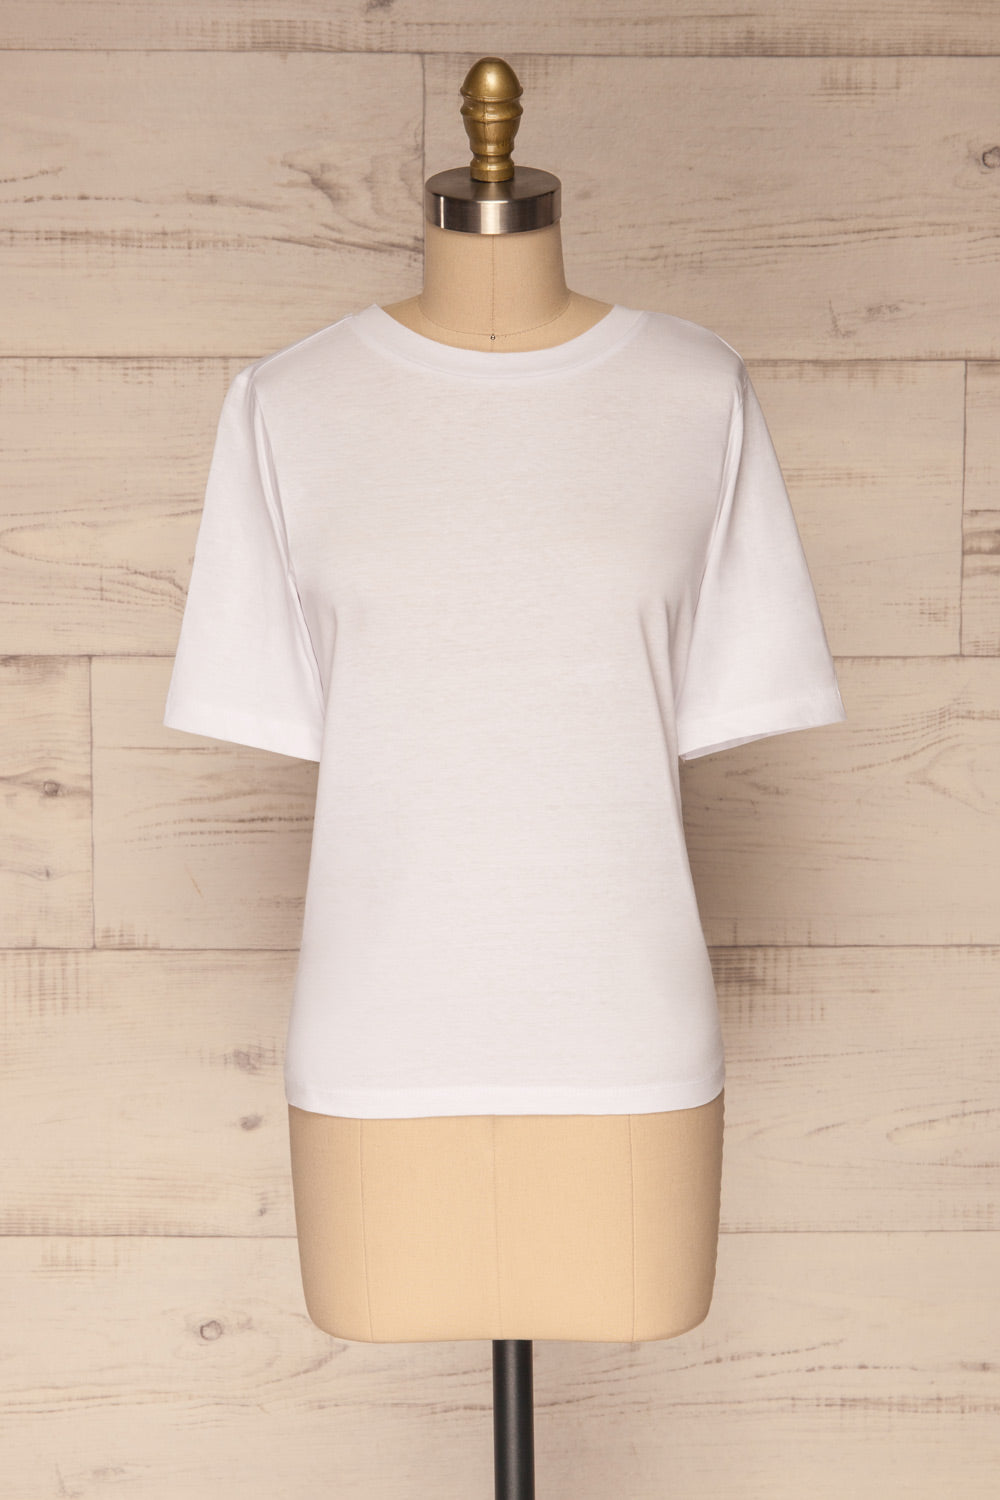 Schore White Organic Cotton T-Shirt | La petite garçonne front view